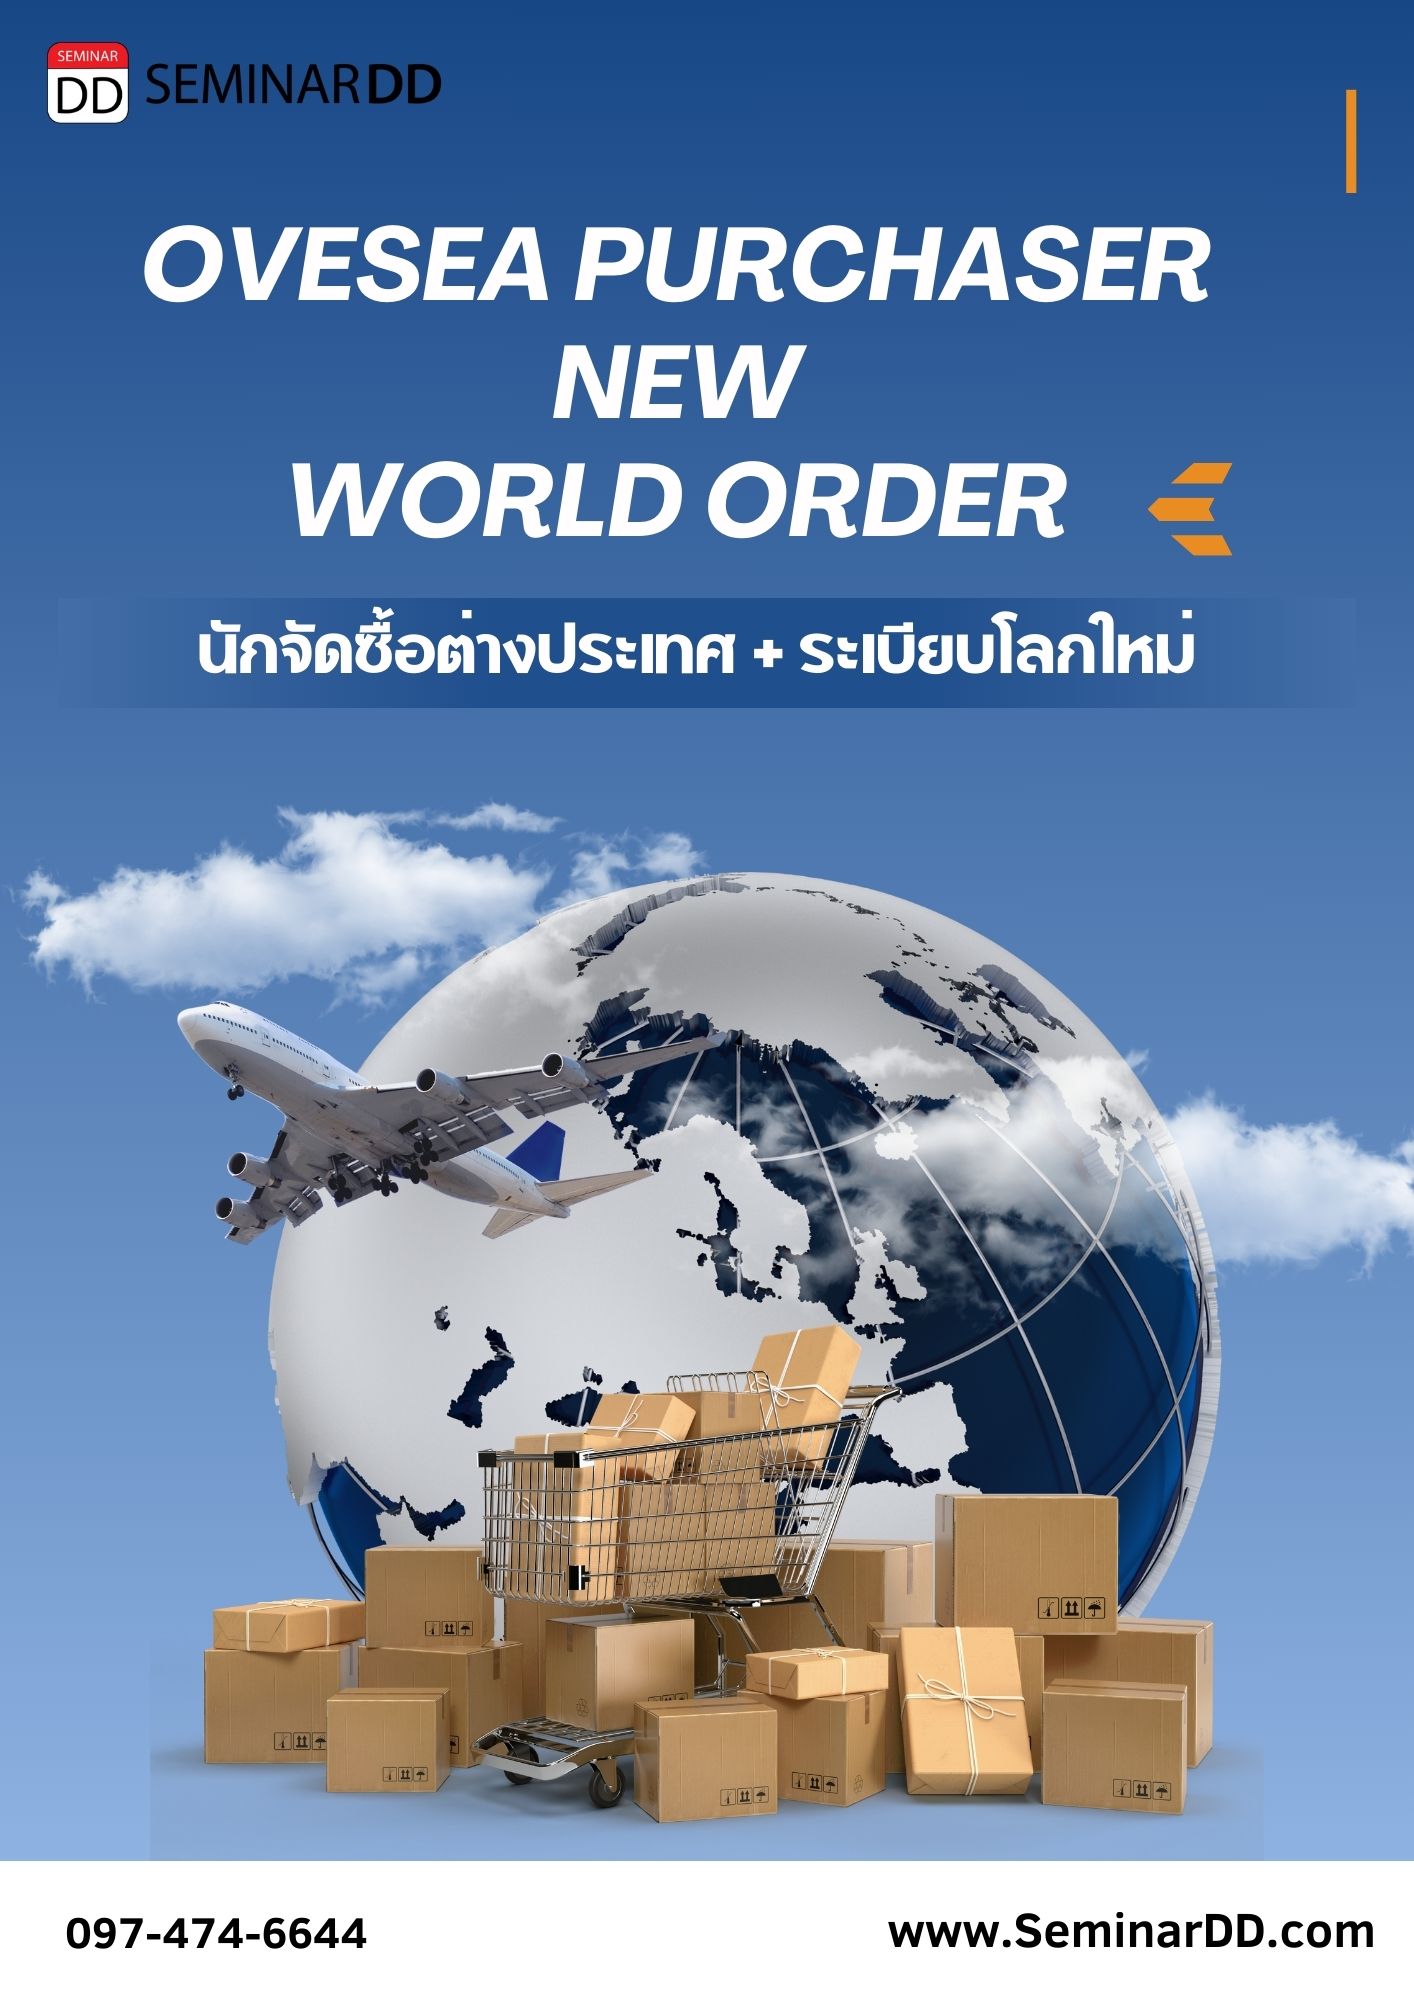 หลักสูตร นักจัดซื้อ-ต่างประเทศ + ระเบียบโลกใหม่ (Oversea Purchaser + new world  order)